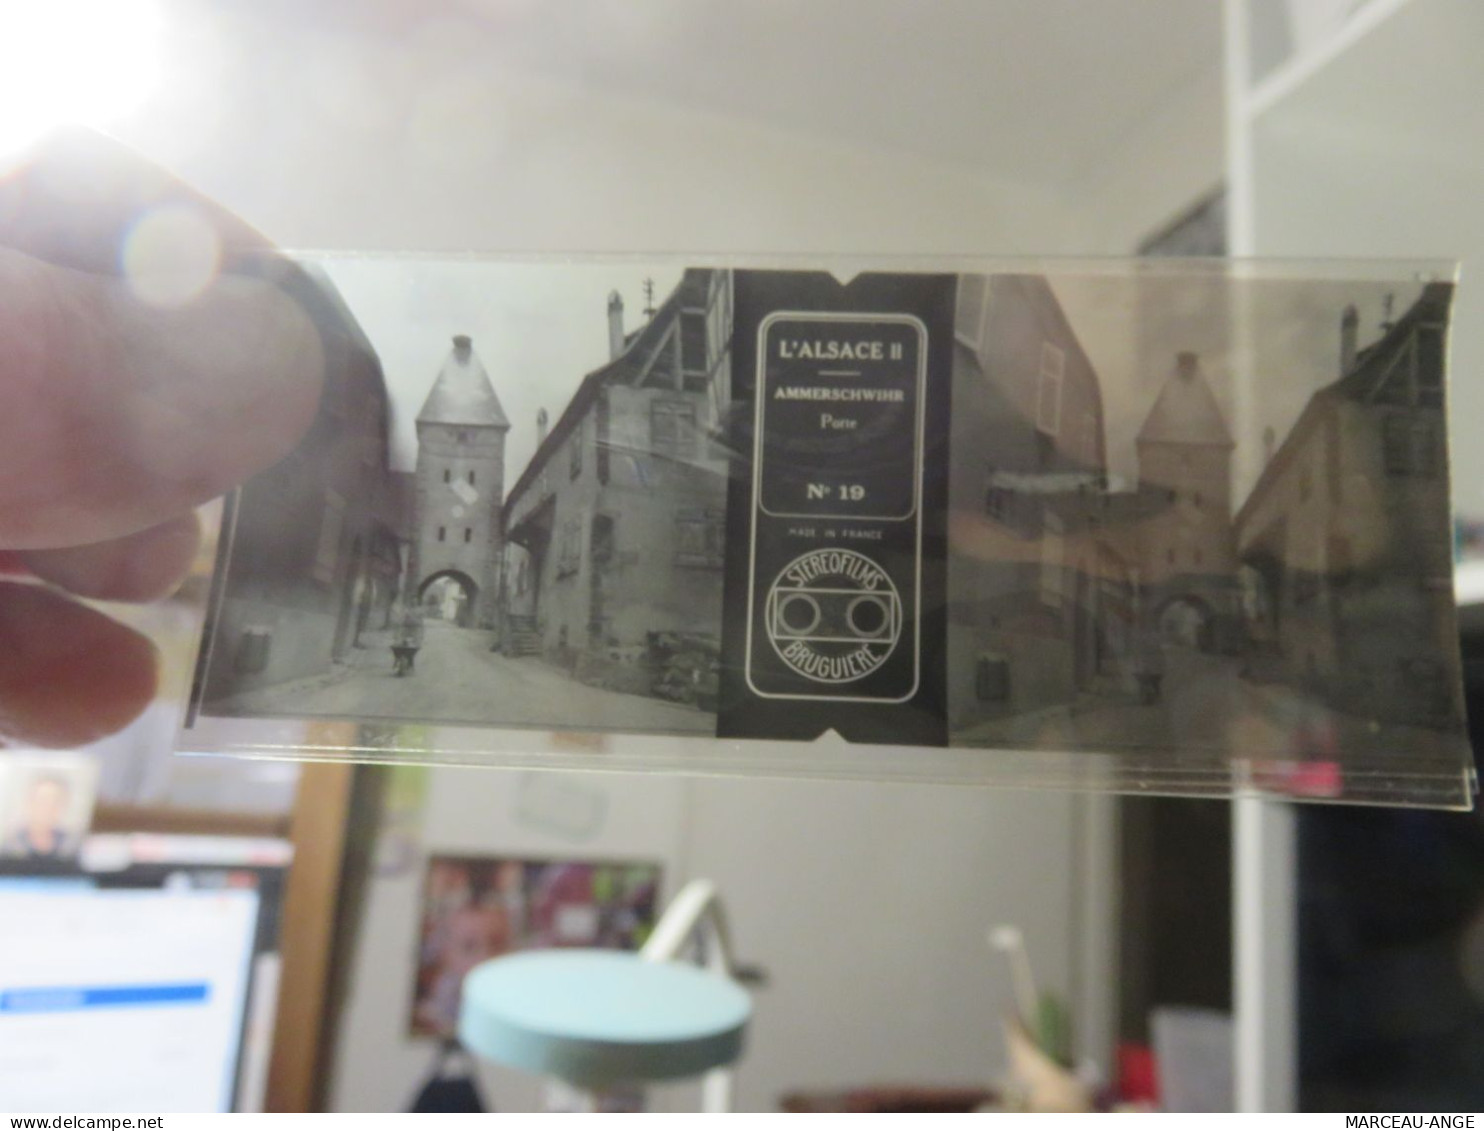 2 boites de POSITIFS stereoscopiques sur film ,, pas vraiment des diapo,mais bon,,vendue et montré comme je peux